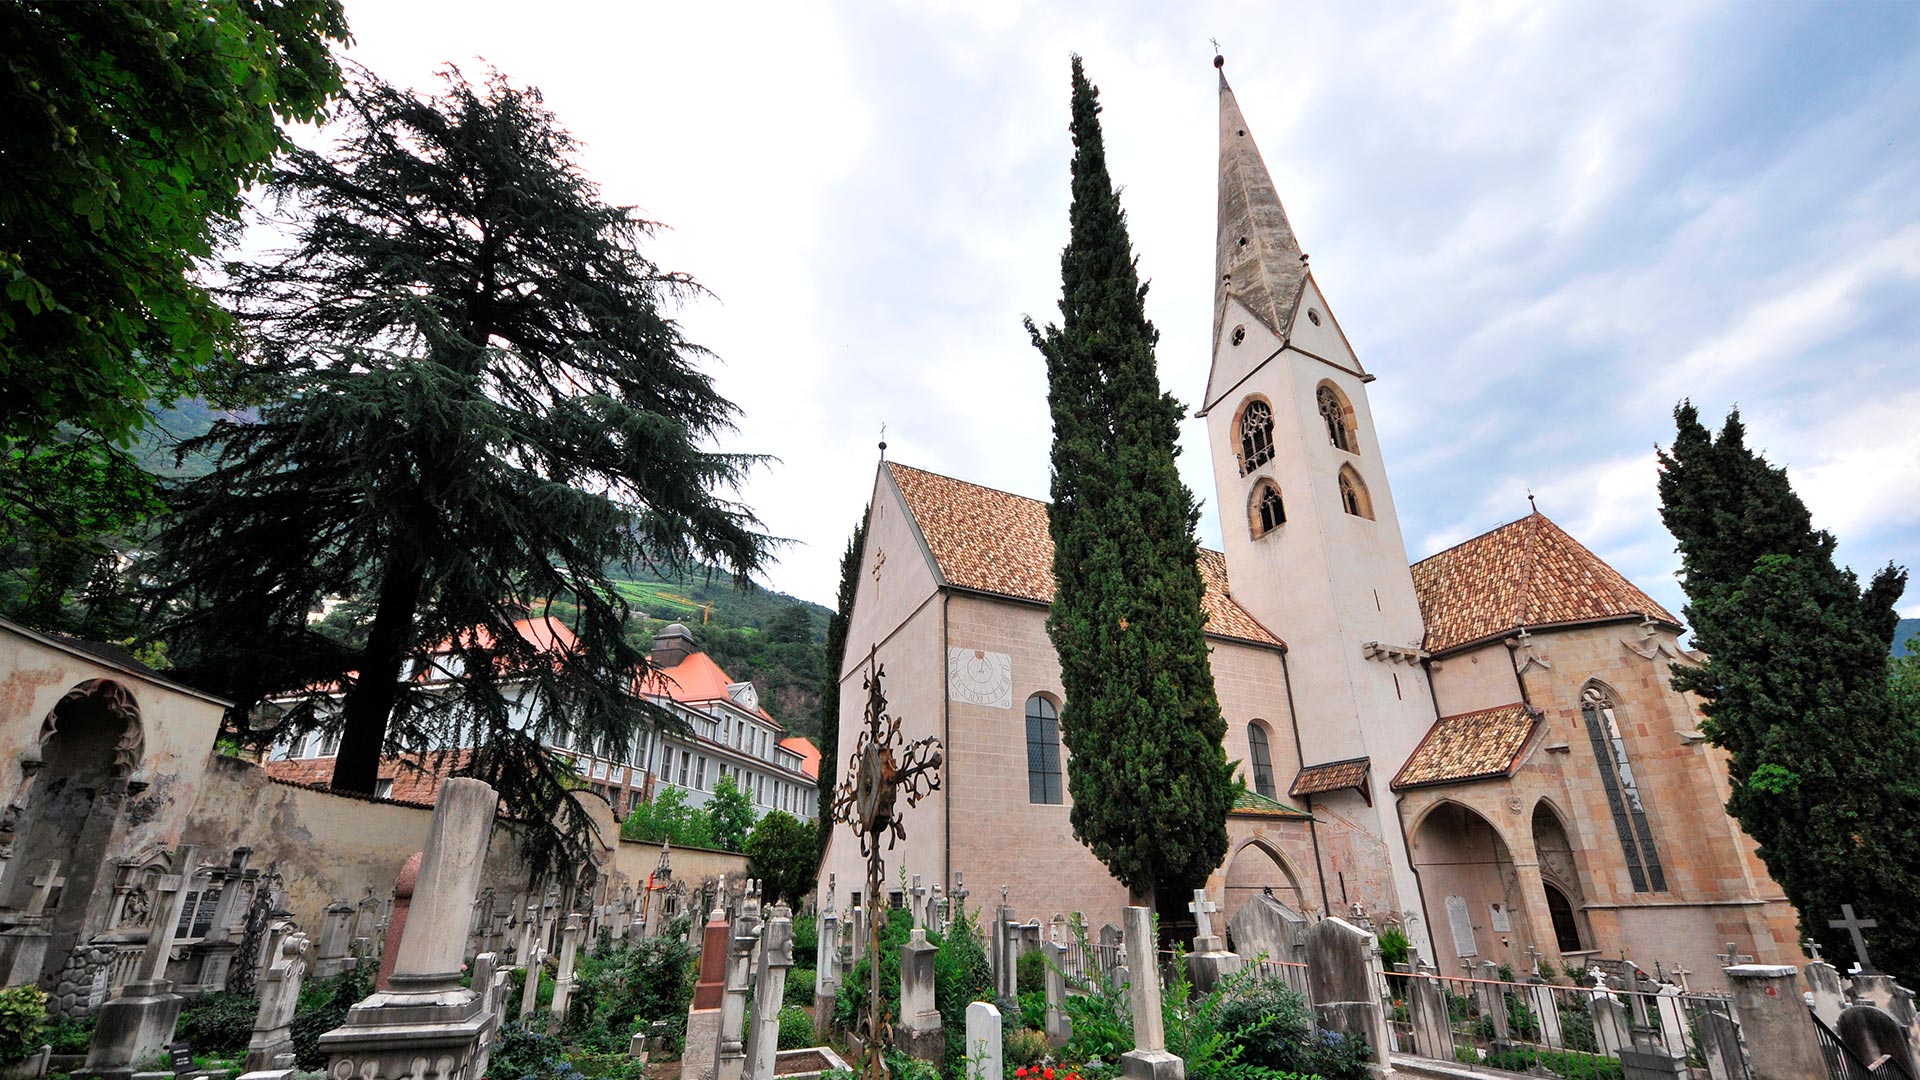 Il cimitero di Bolzano è un luogo di alta cultura e tradizione che racconta la storia e le vicende accadute nella città.